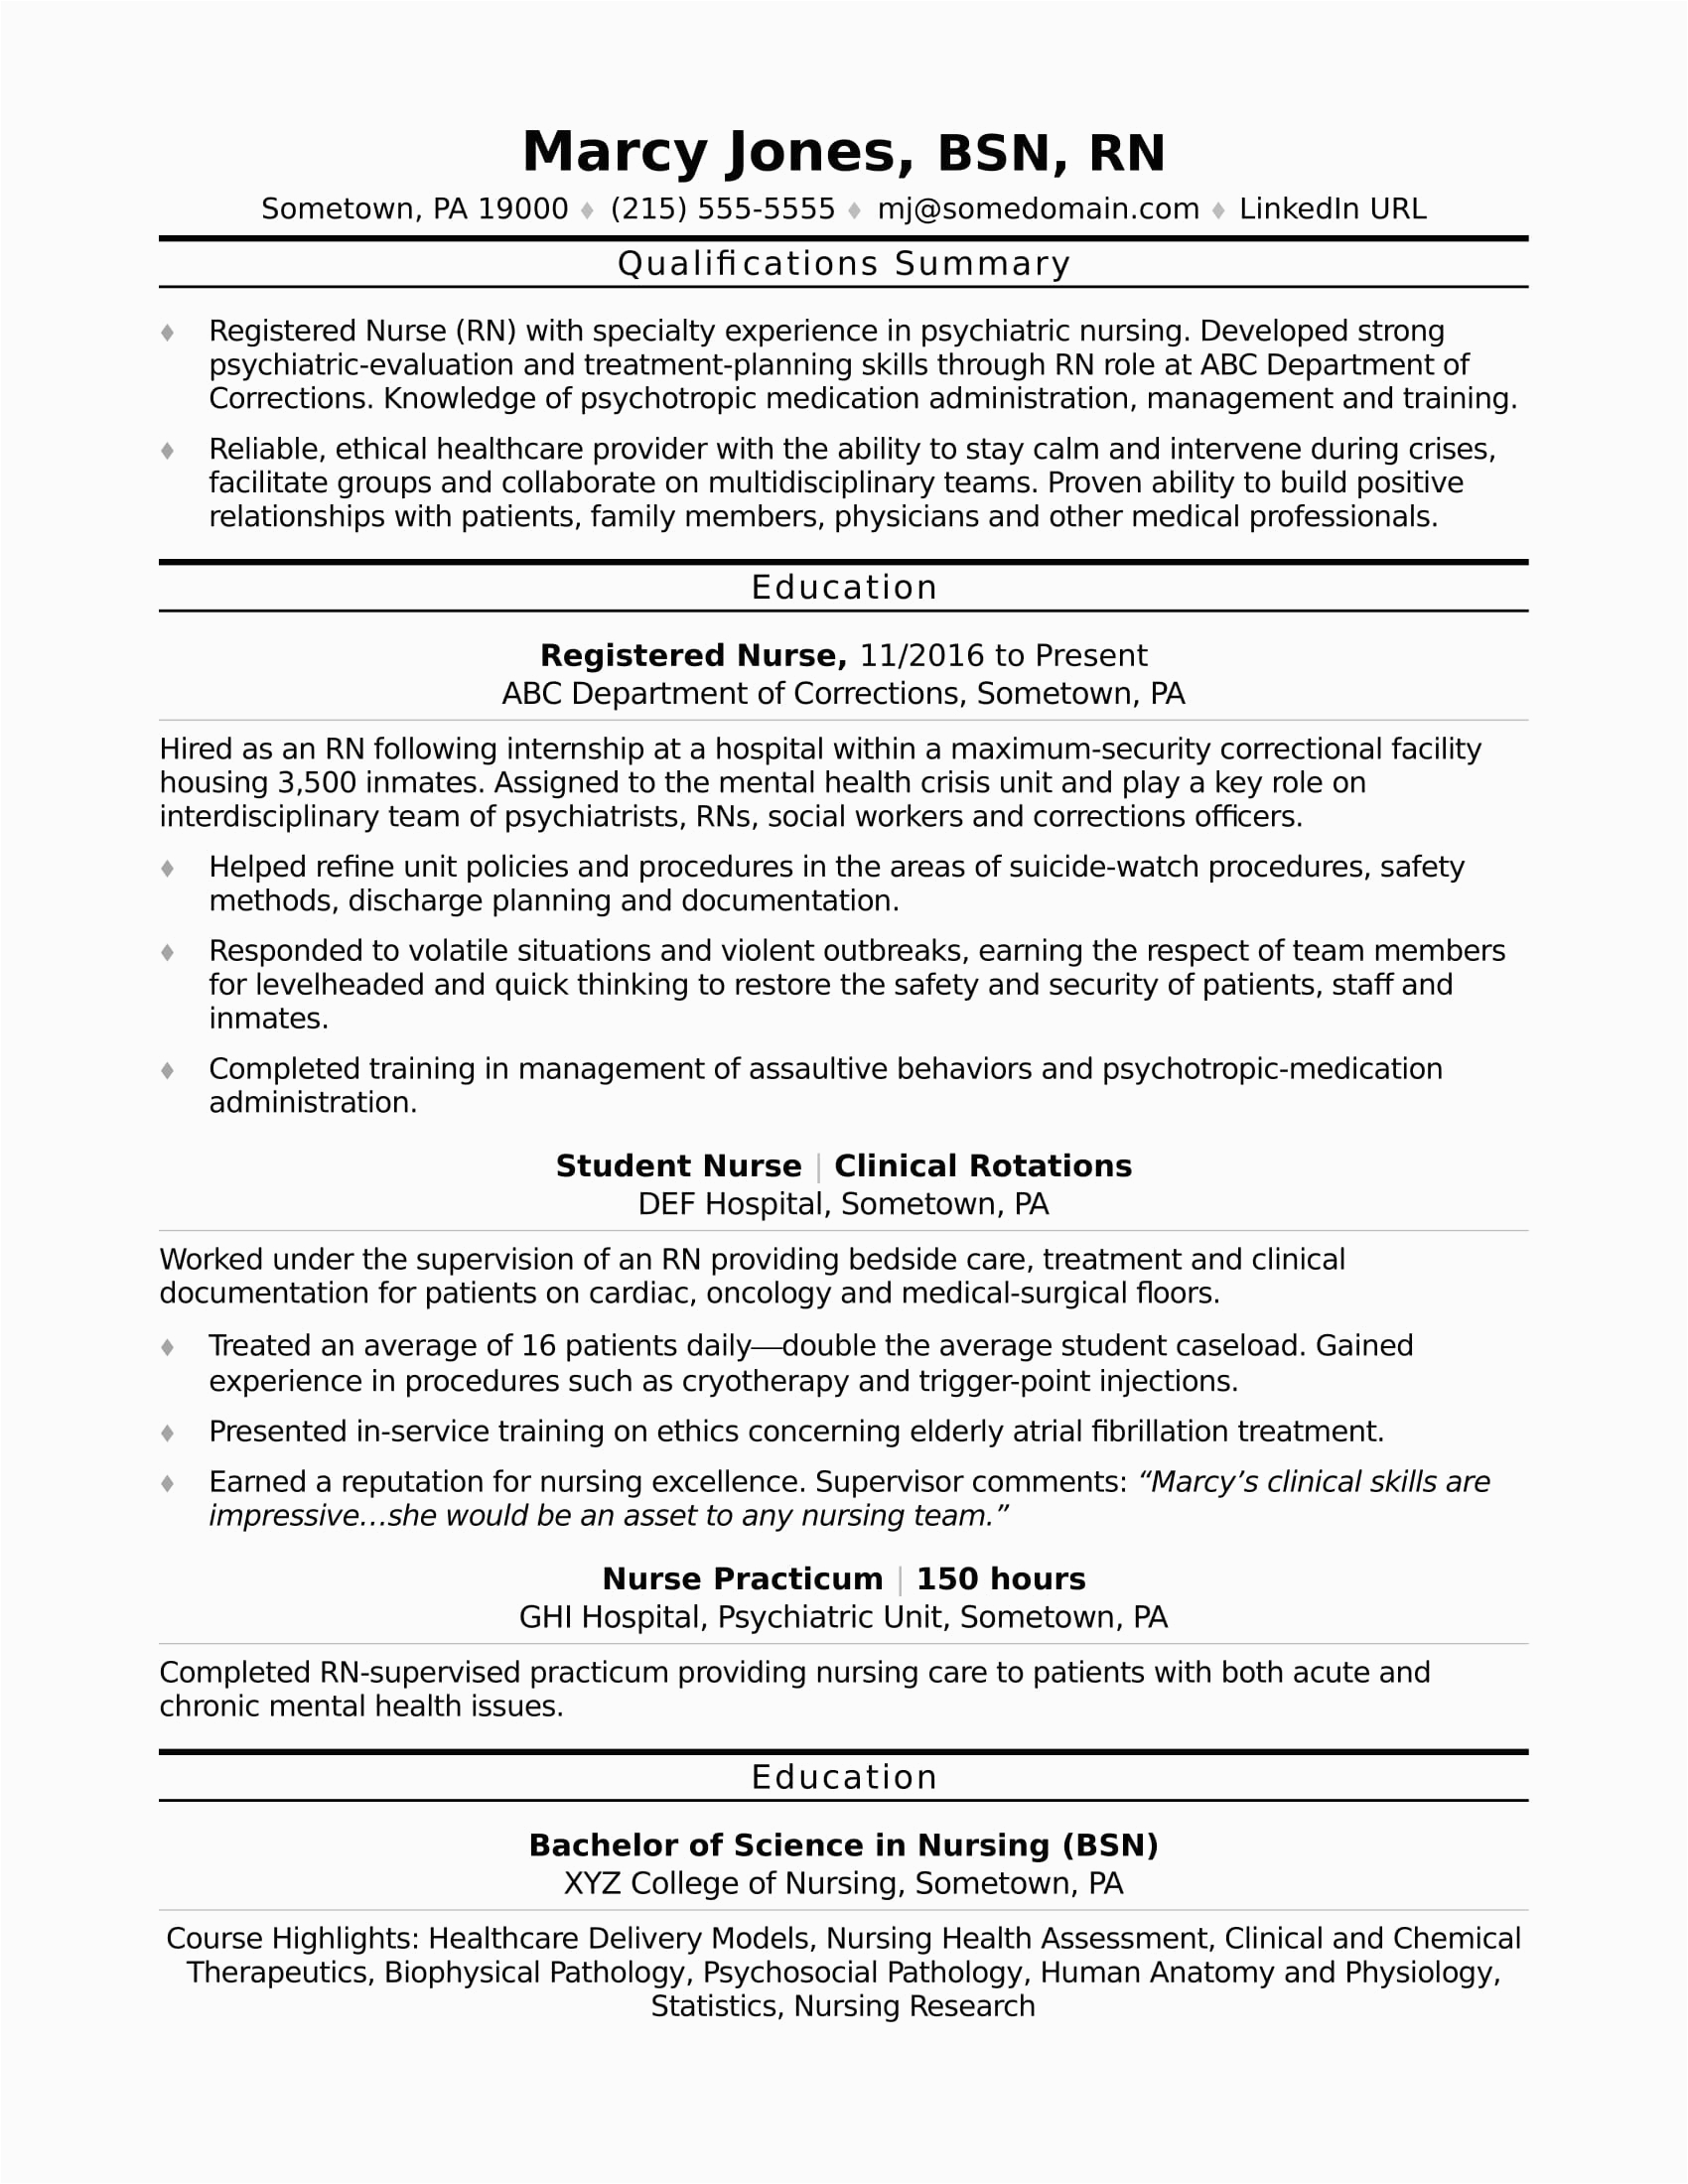 Sample Resume for Registered Nurse Position Registered Nurse Rn Resume Sample